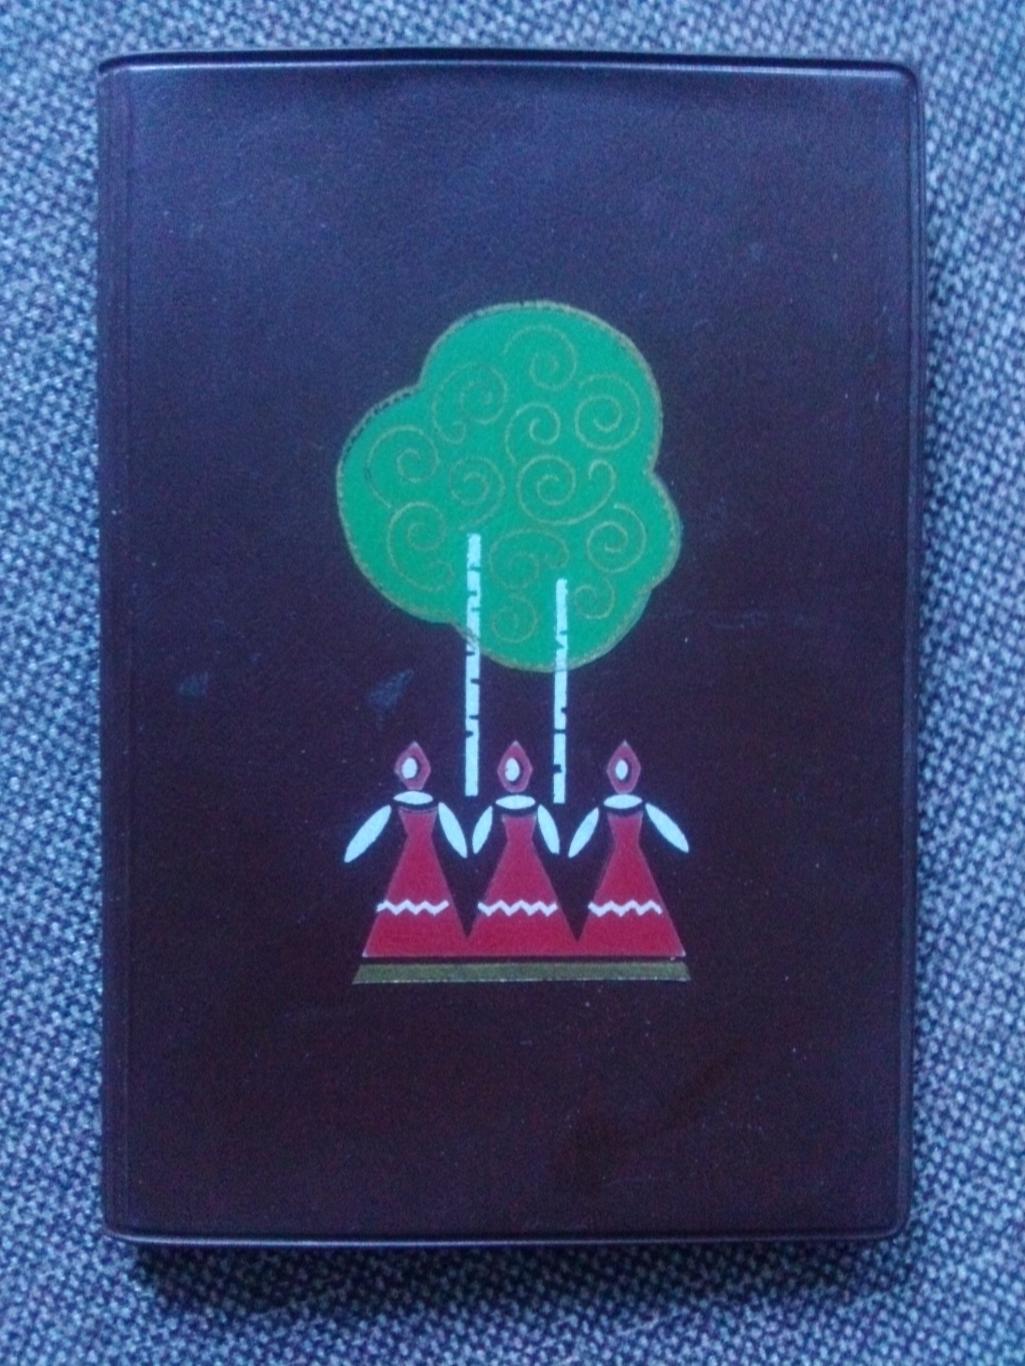 Блокнот в обложке с рисунком (времена СССР) 1972 г. Ростов на Дону (чистый)